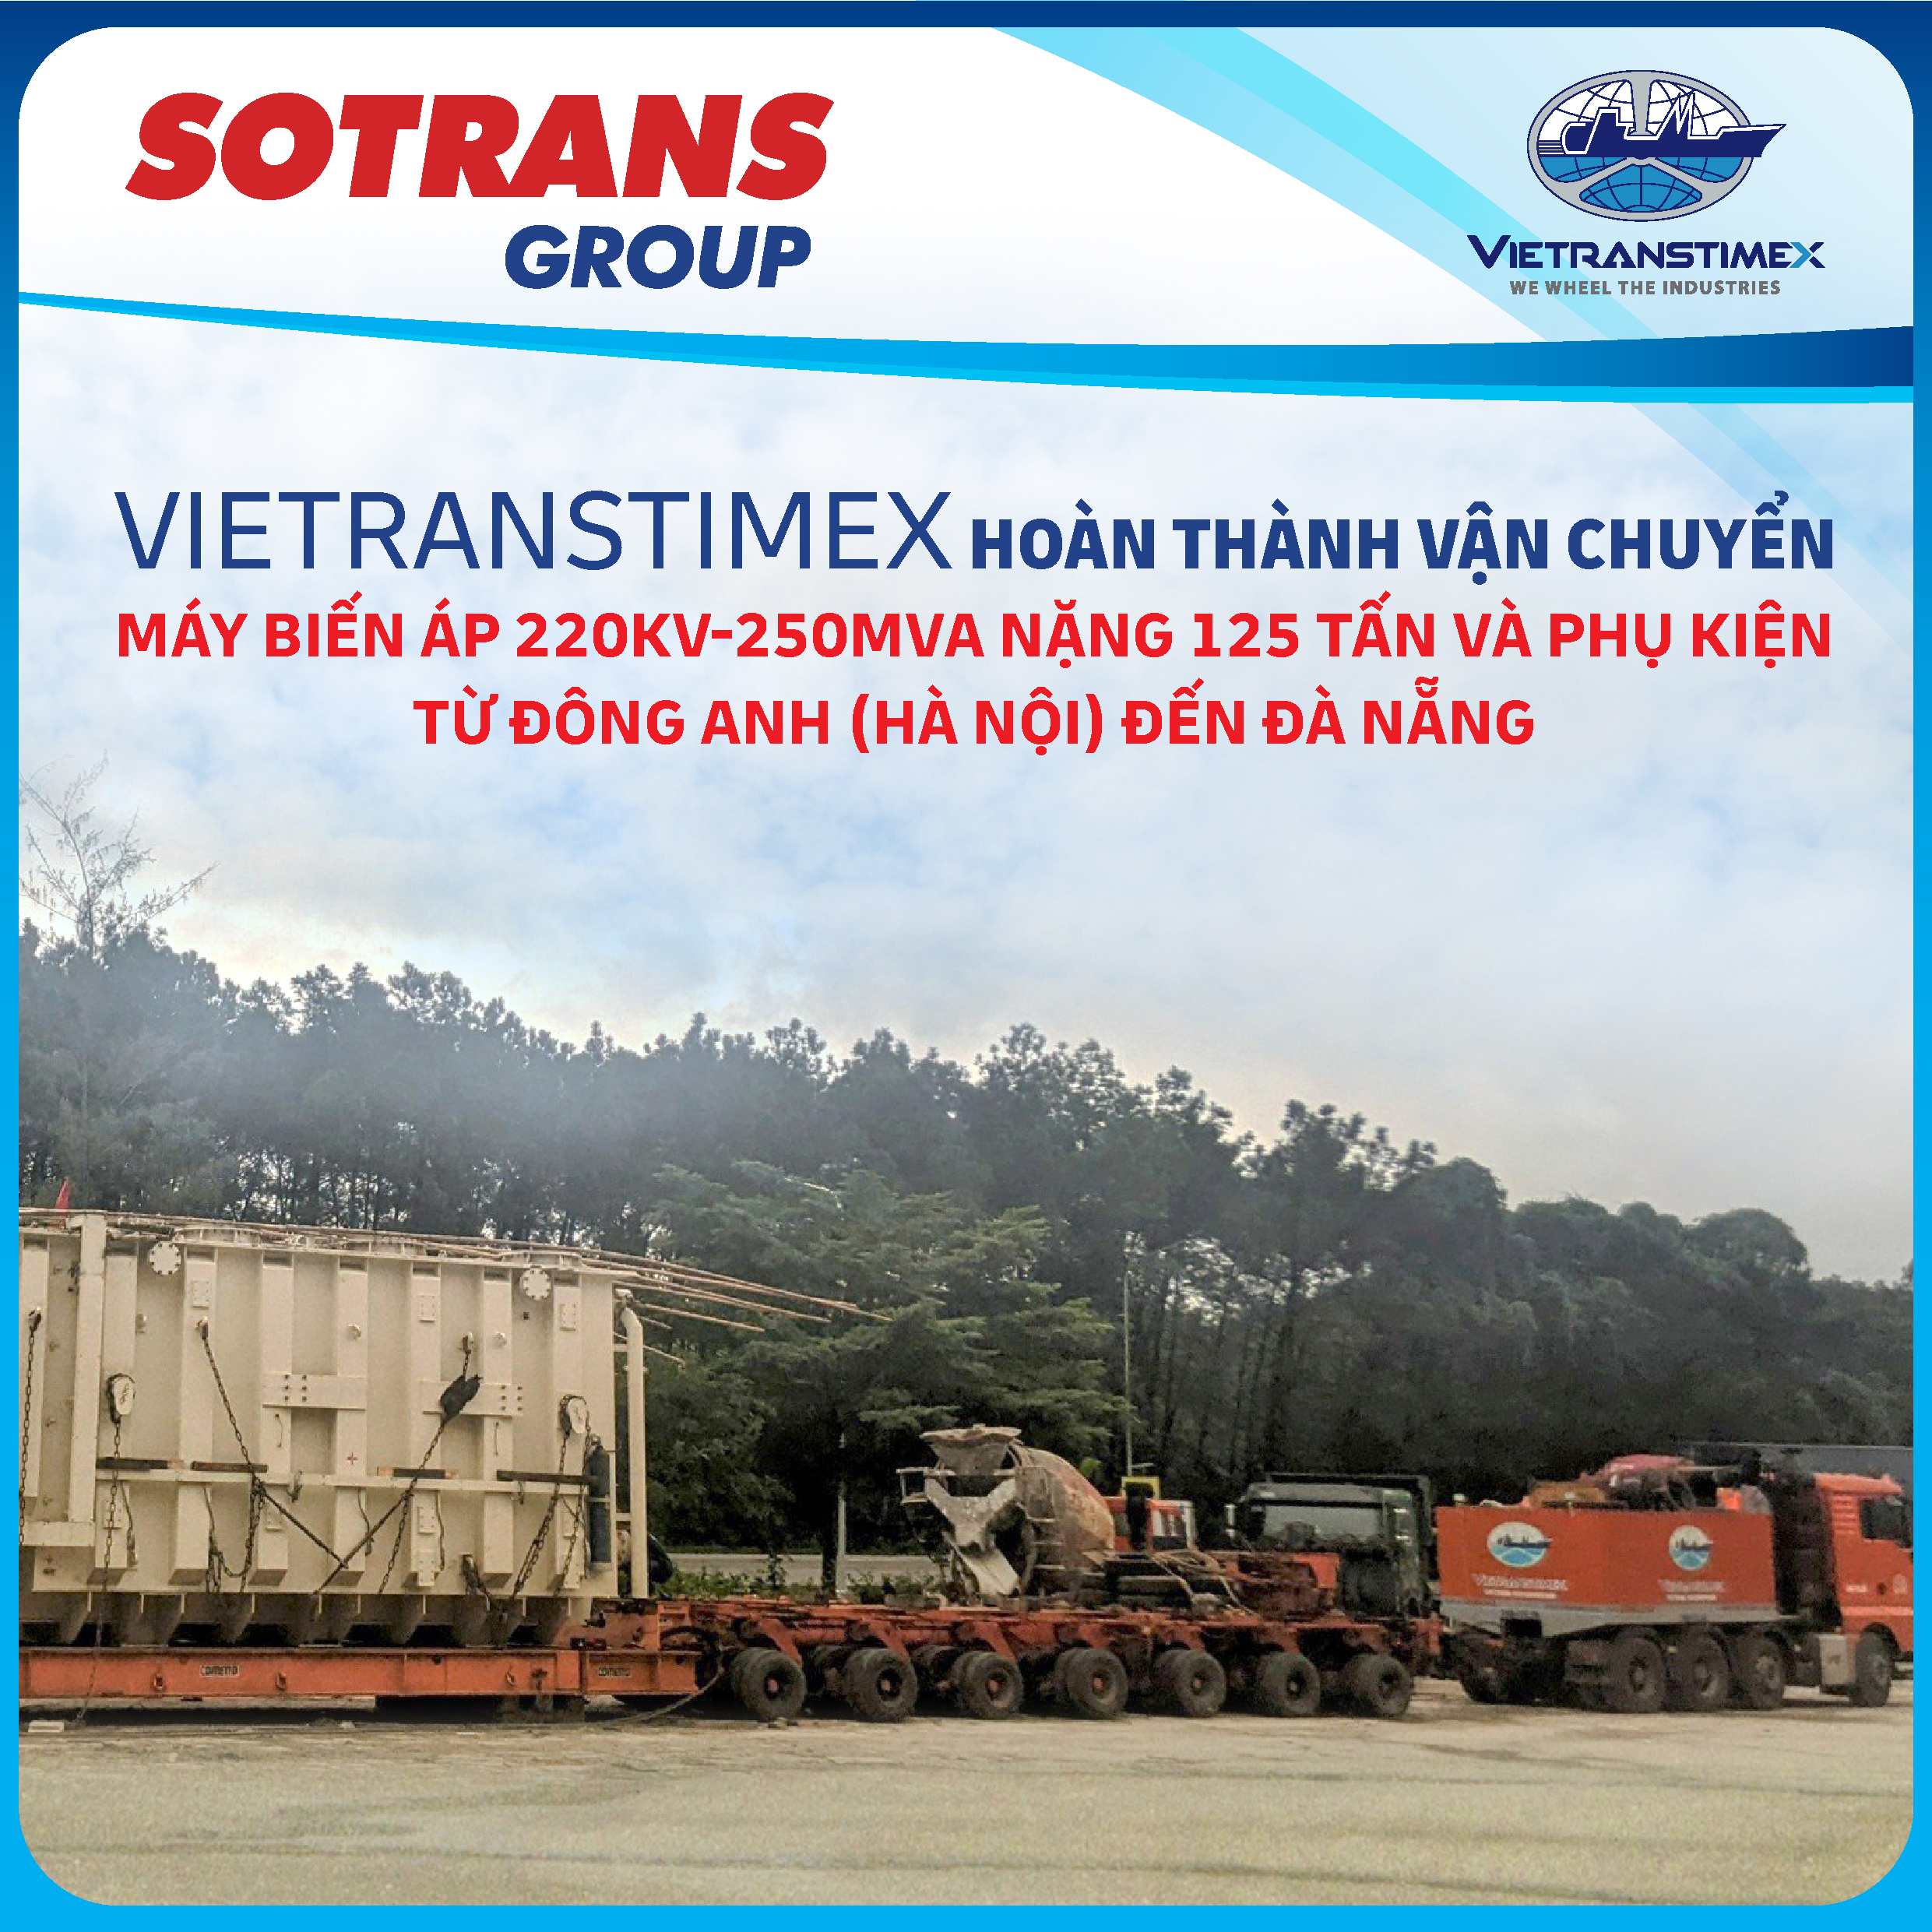 Vietranstimex Hoàn Thành Vận Chuyển Máy Biến Áp Hải Châu (220KV-250MVA, nặng 125 tấn)